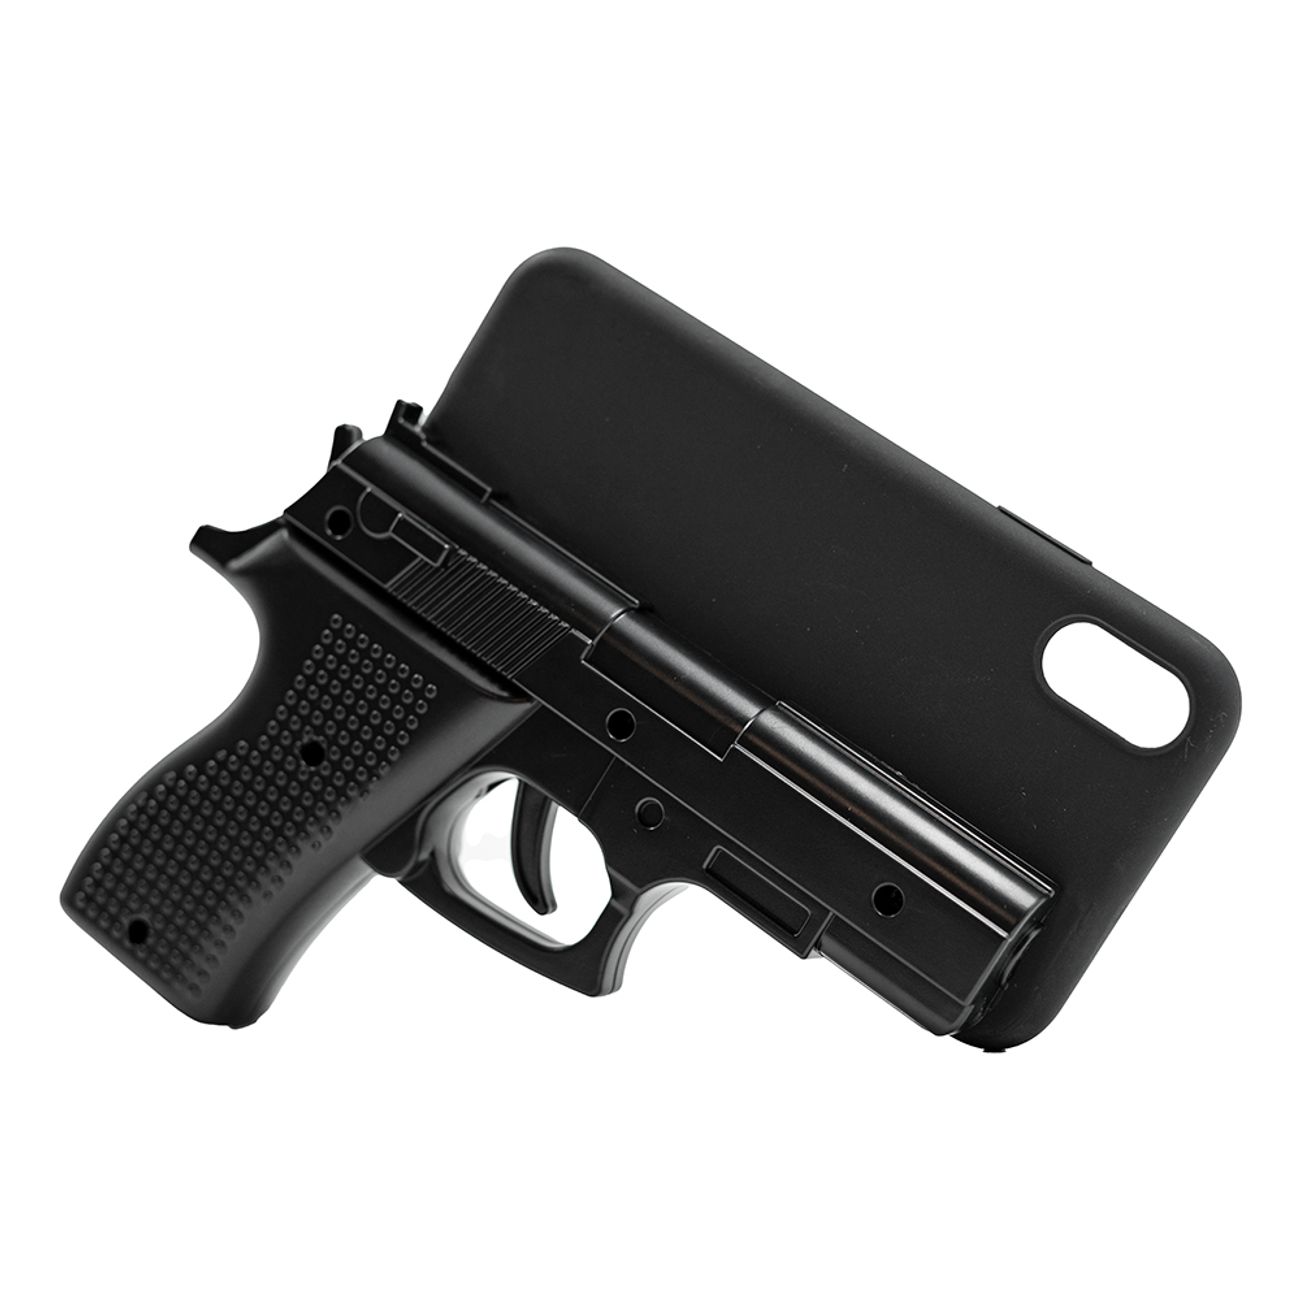 pistol-iphone-skal-82954-1